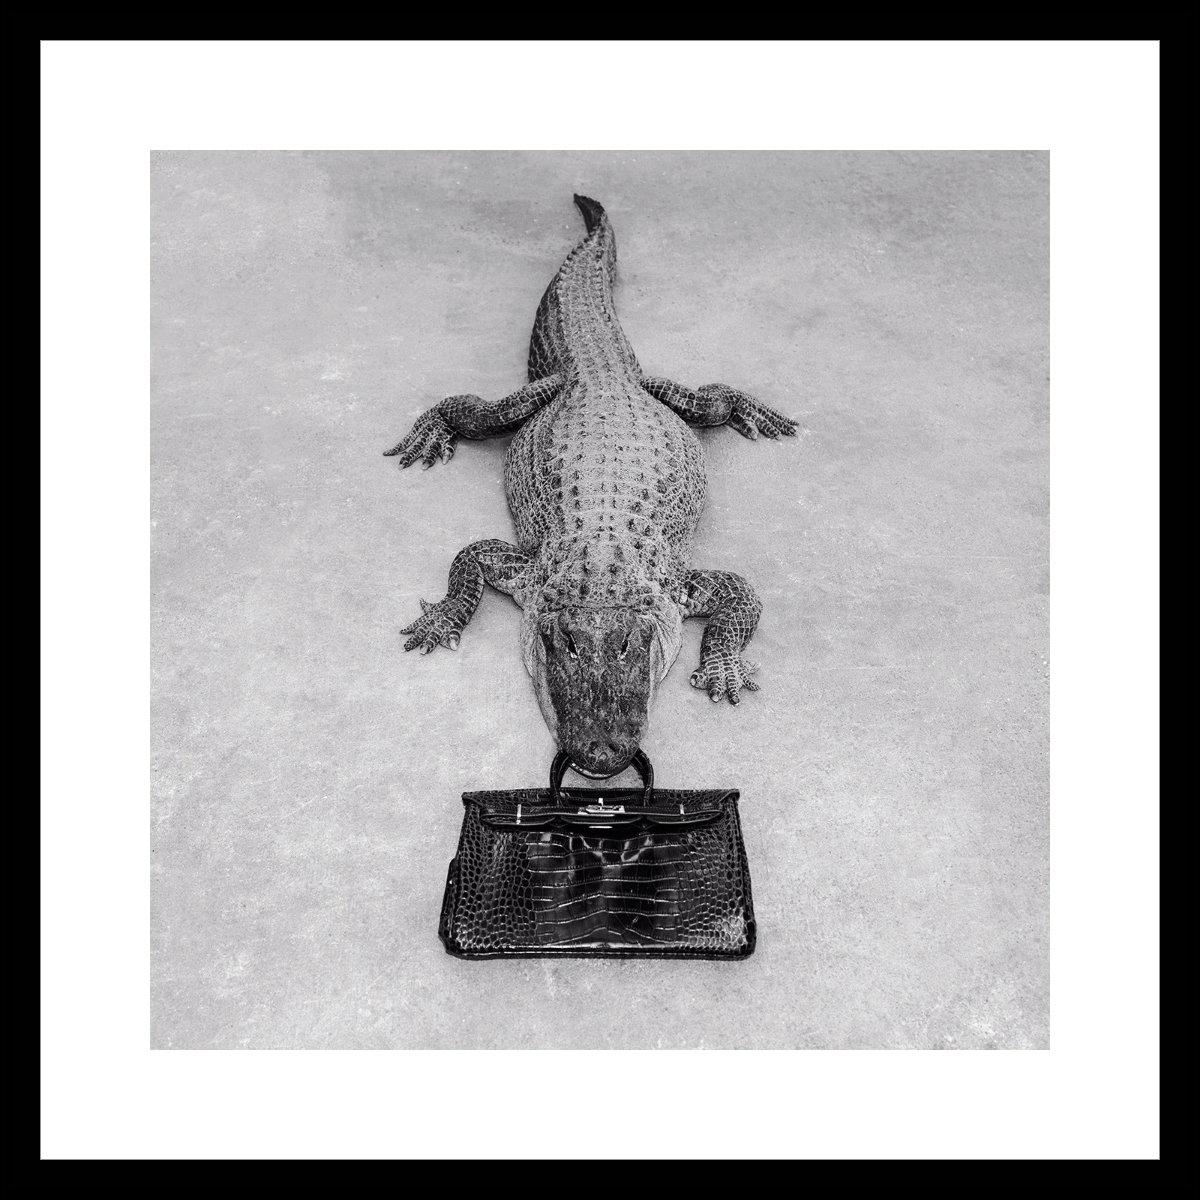 Tyler Shields - Gator Birkin Monochrome, photographie 2014, imprimée d'après 1